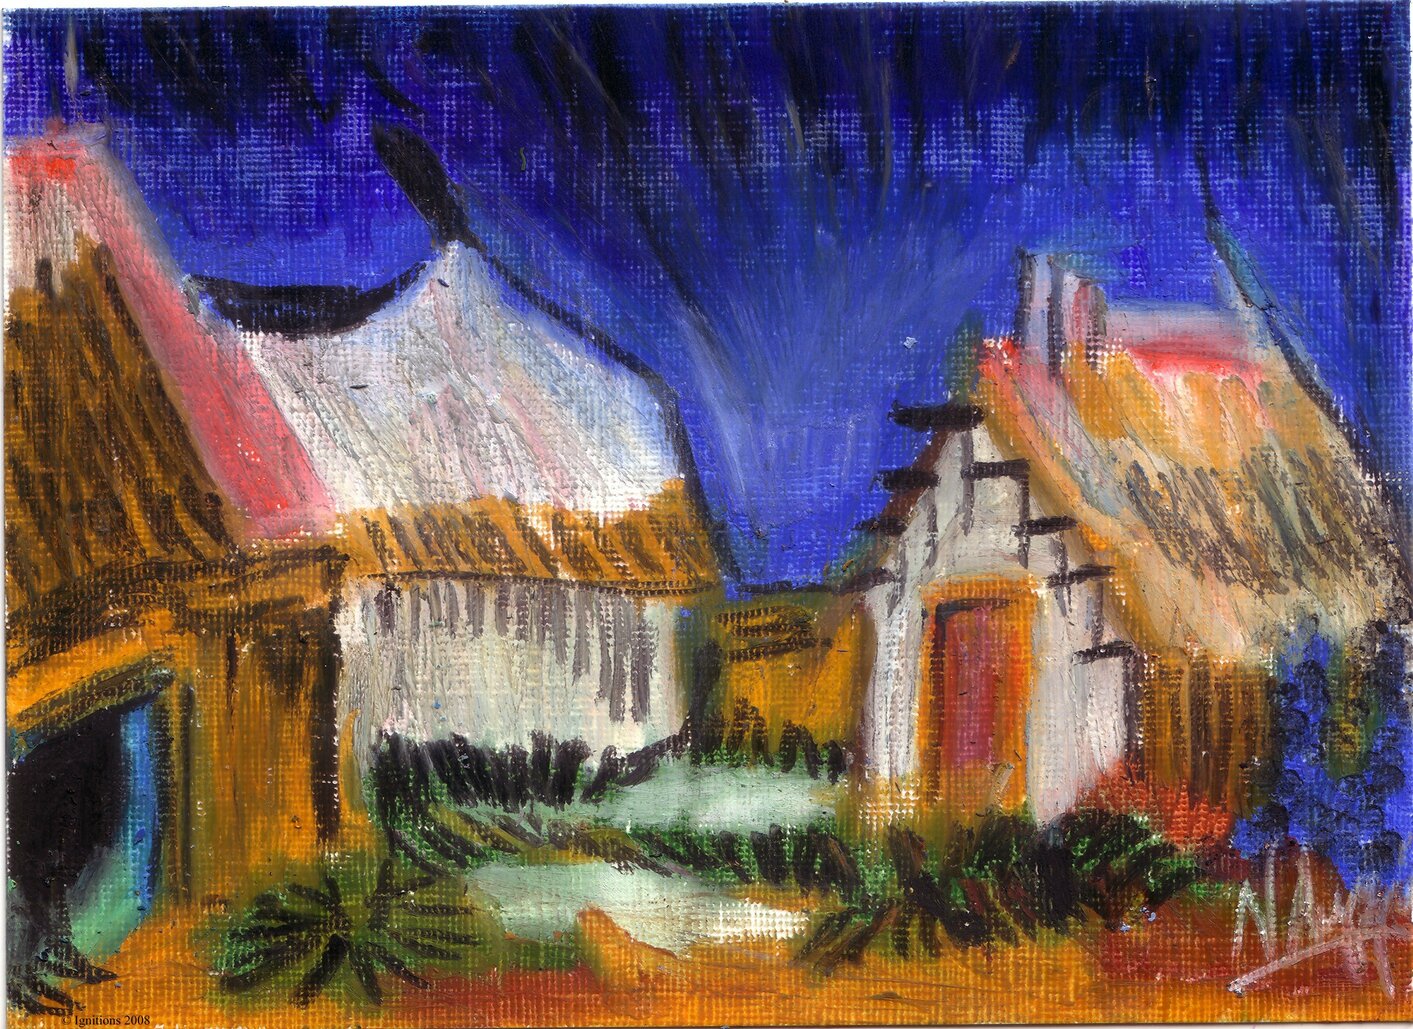 Les maisons de gardians de Vincent.